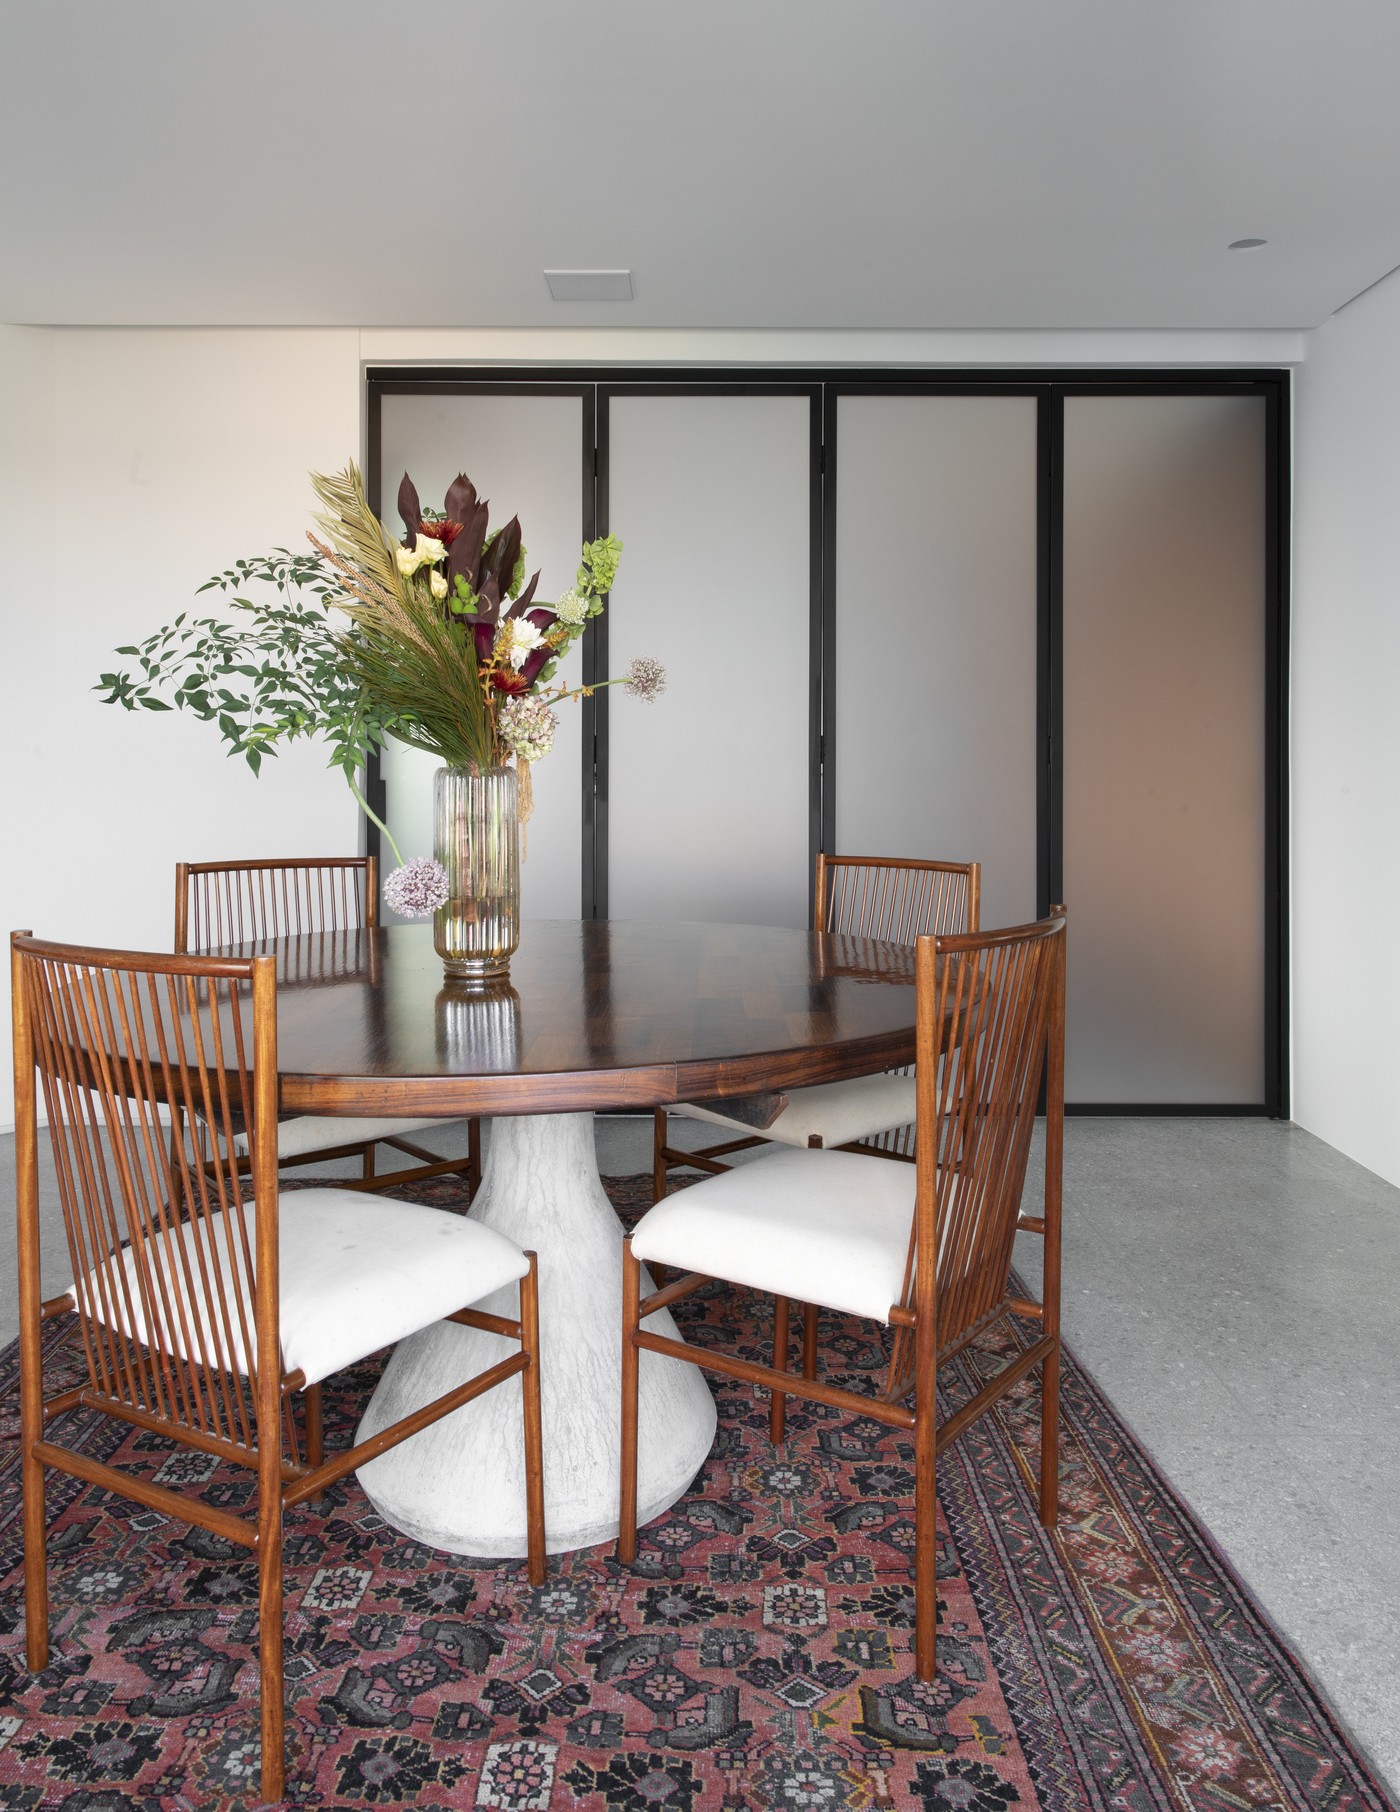 Décor do dia: cozinha integrada à sala de jantar tem portas deslizantes -  Casa Vogue